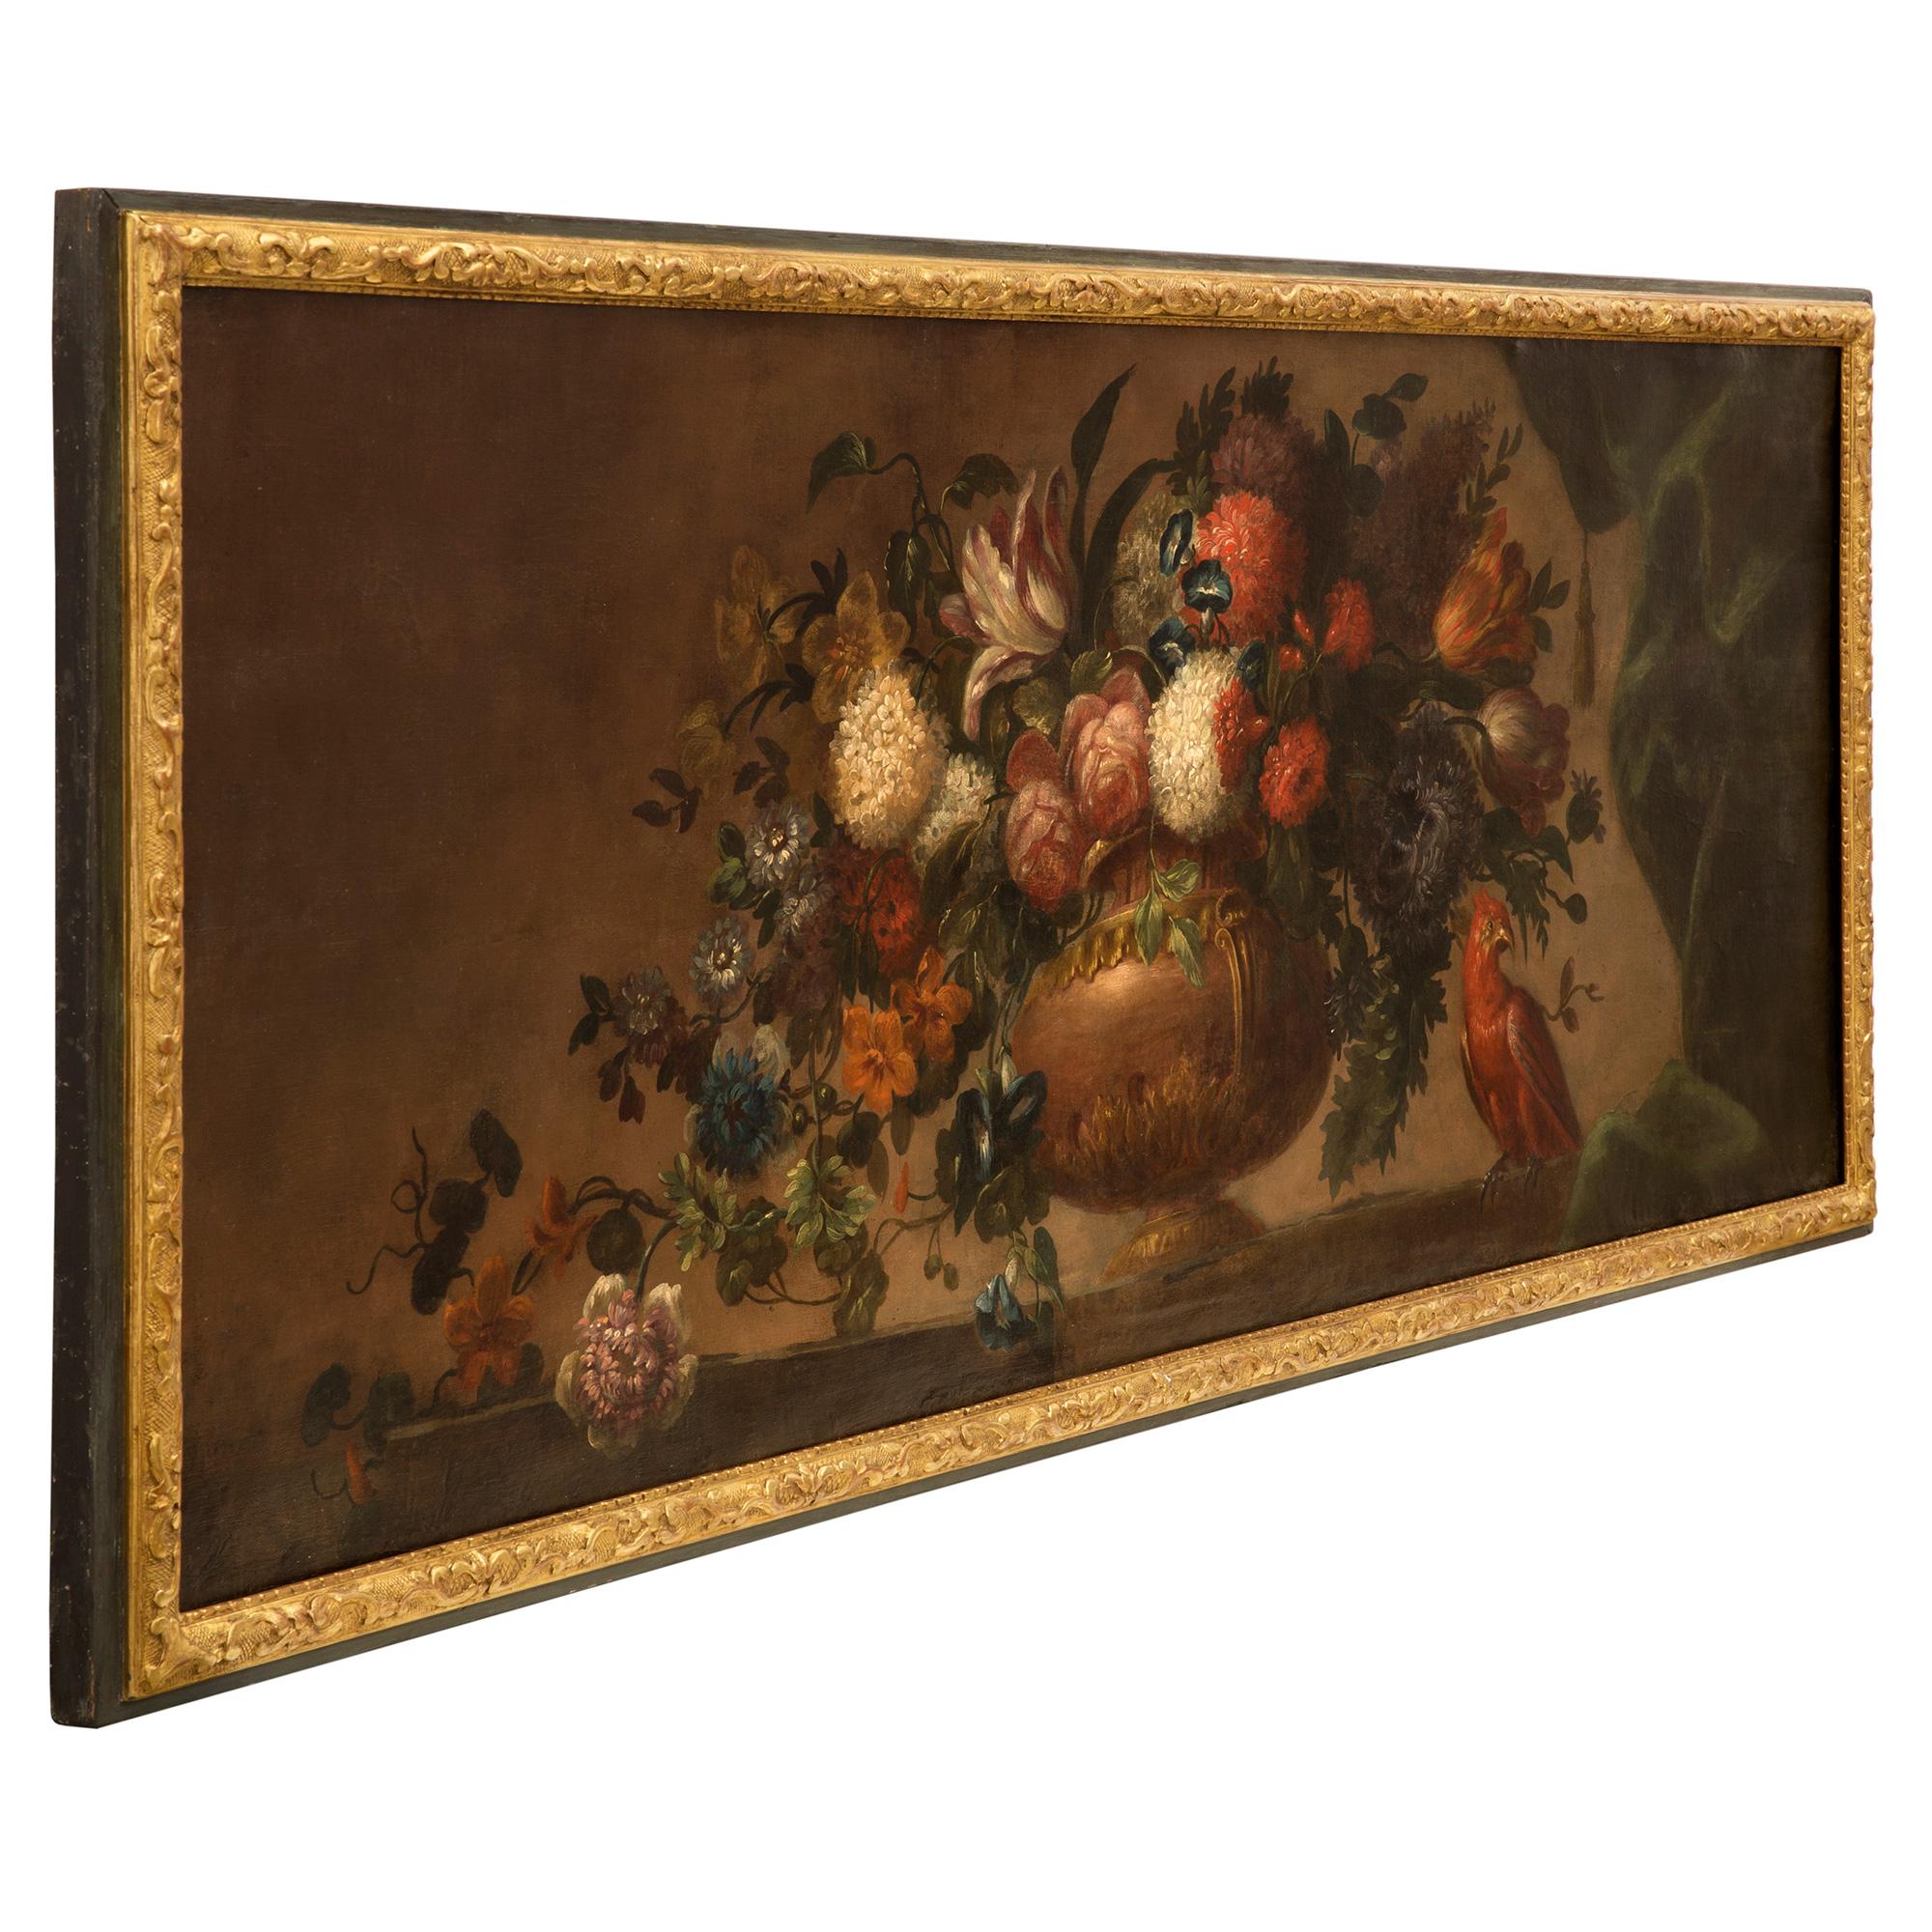 Eine schöne Französisch frühen 19. Jahrhundert Louis XVI st. Öl auf Leinwand Gemälde. Das Stillleben Gemälde ist in der ursprünglichen patiniert grün und vergoldet Rahmen gesetzt und zeigt eine elegante große Urne in der Mitte mit atemberaubenden